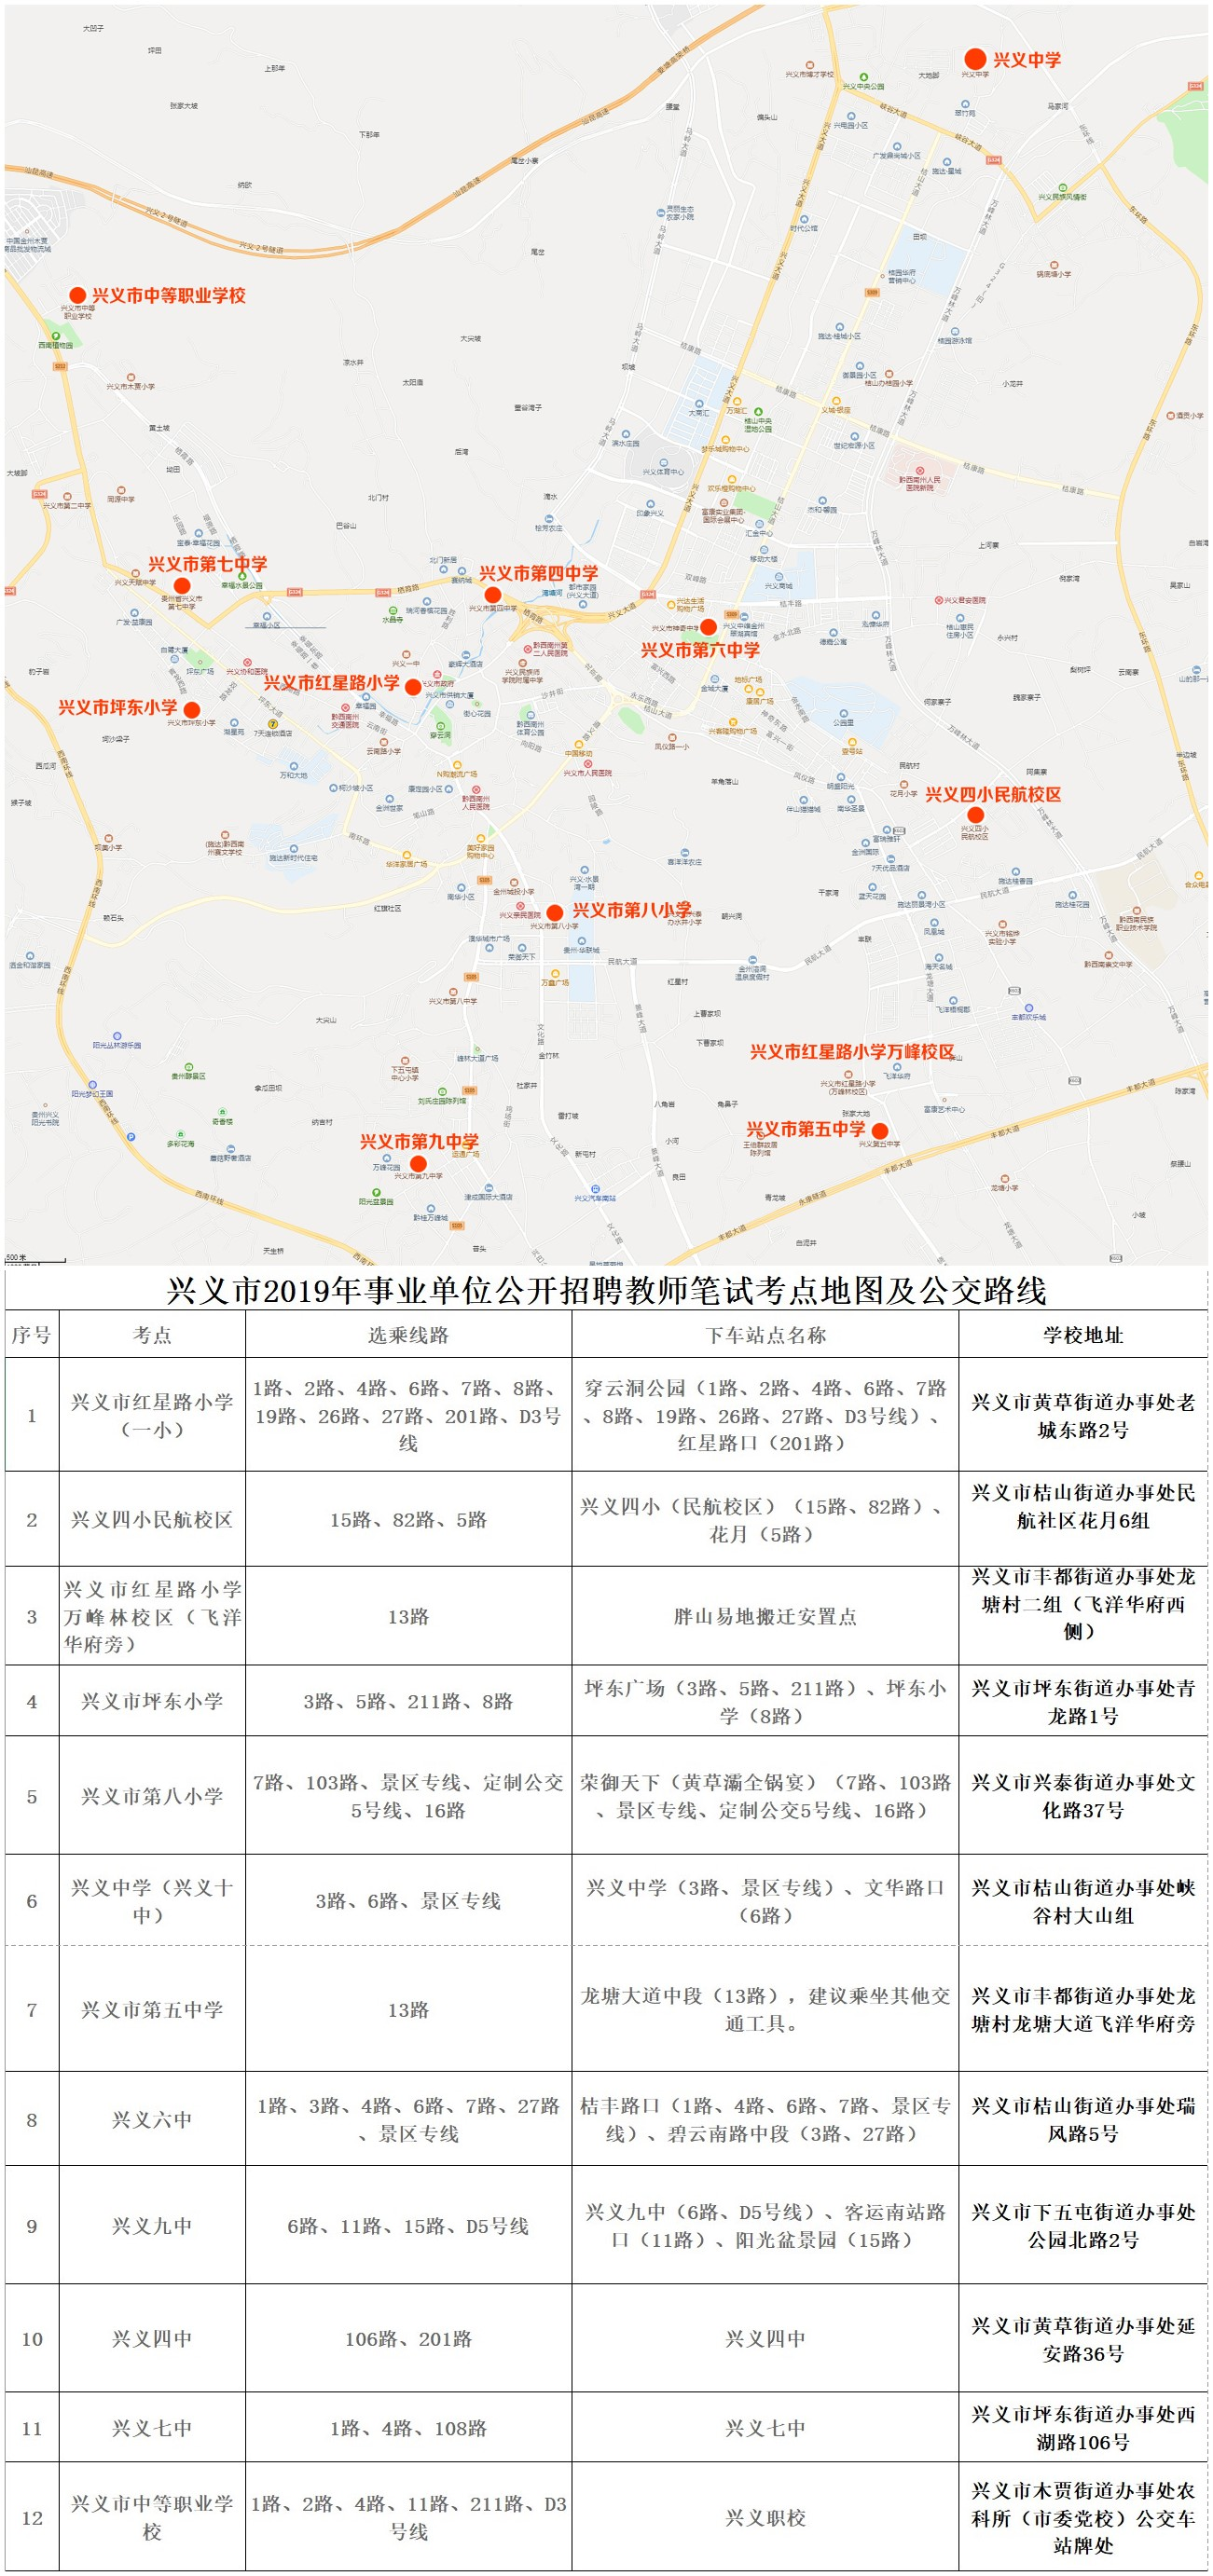 2019年兴义市事业单位招聘教师笔试考点地图及公交路线